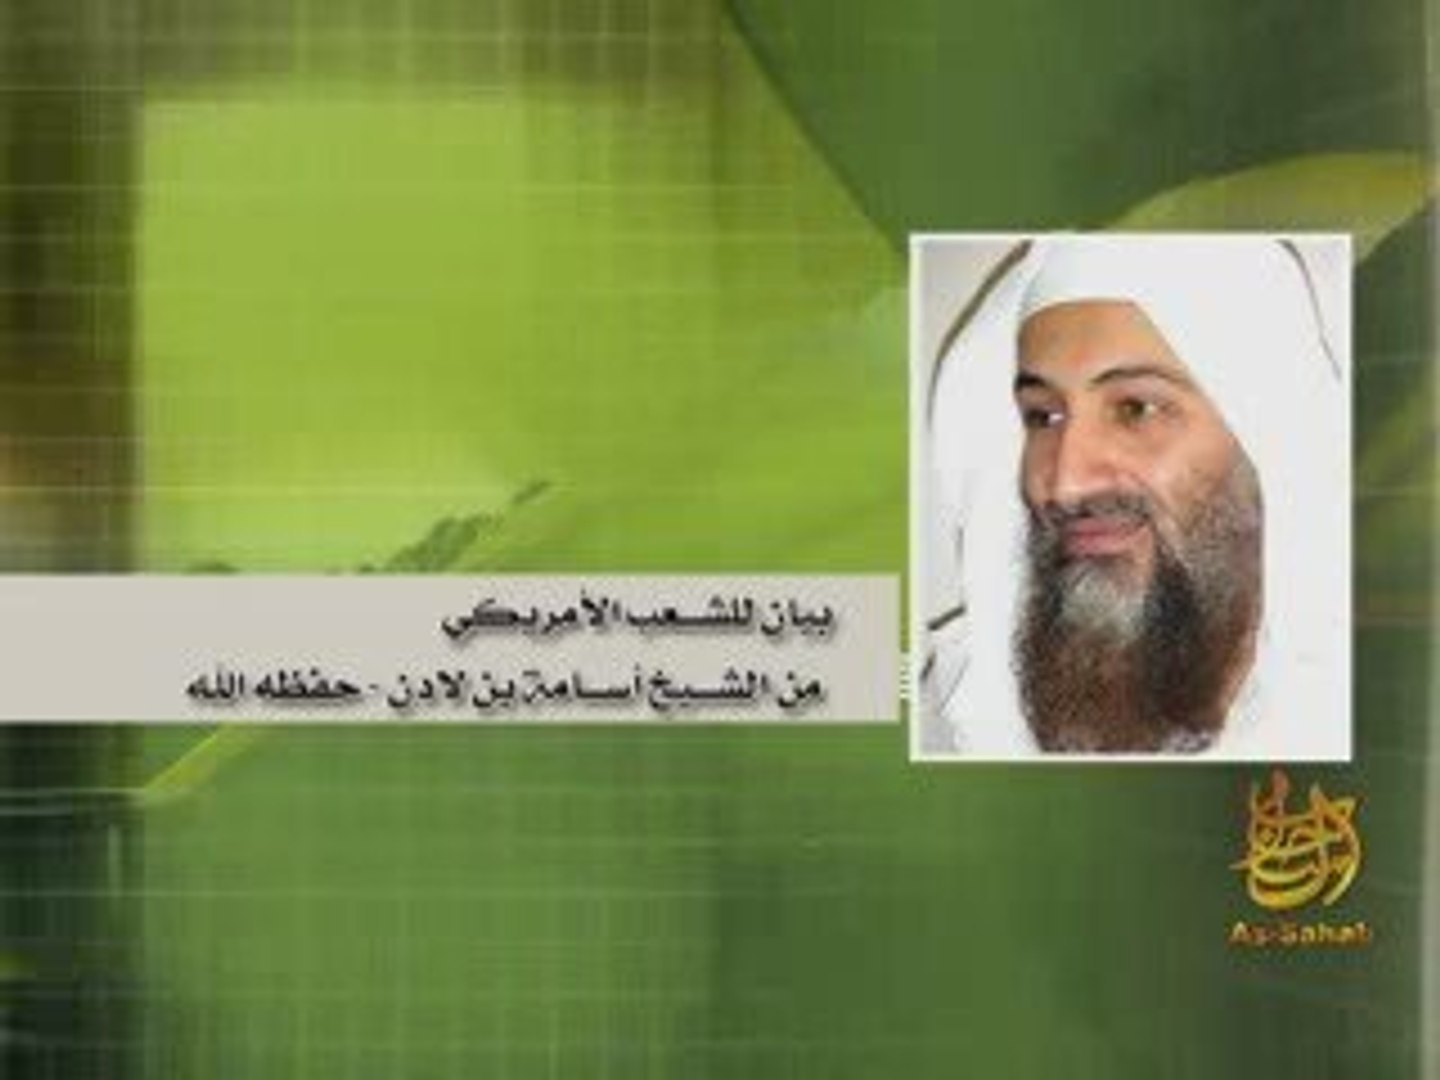 بيان للشعب الامريكي من الشيخ اسامة بن لادن حفظ الله - video Dailymotion